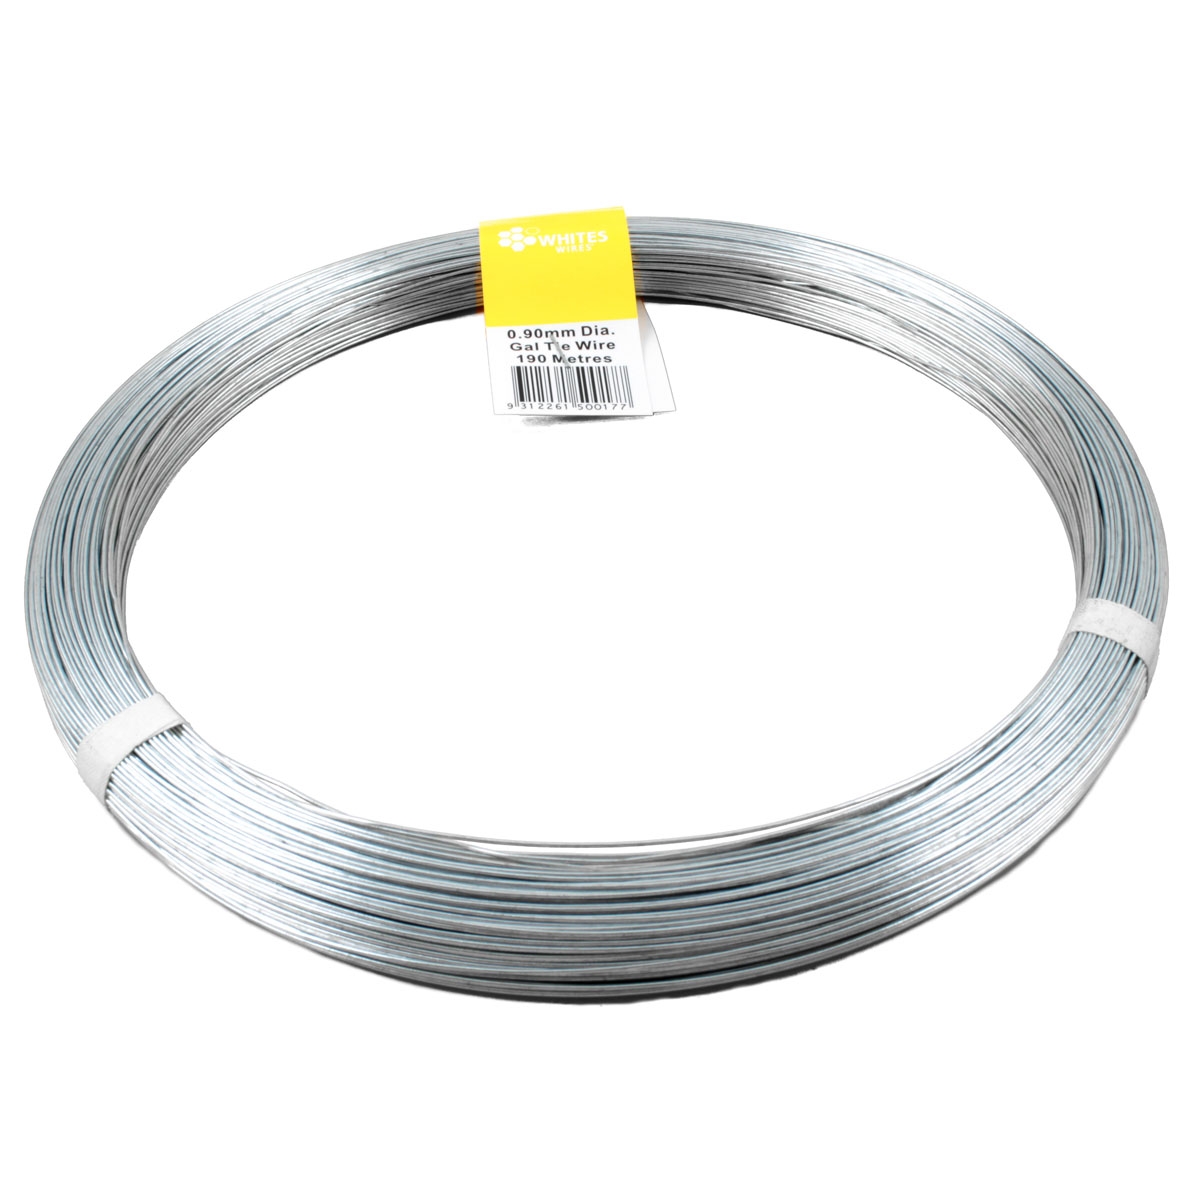 50017 tie wire gal 190m x 0.90mm